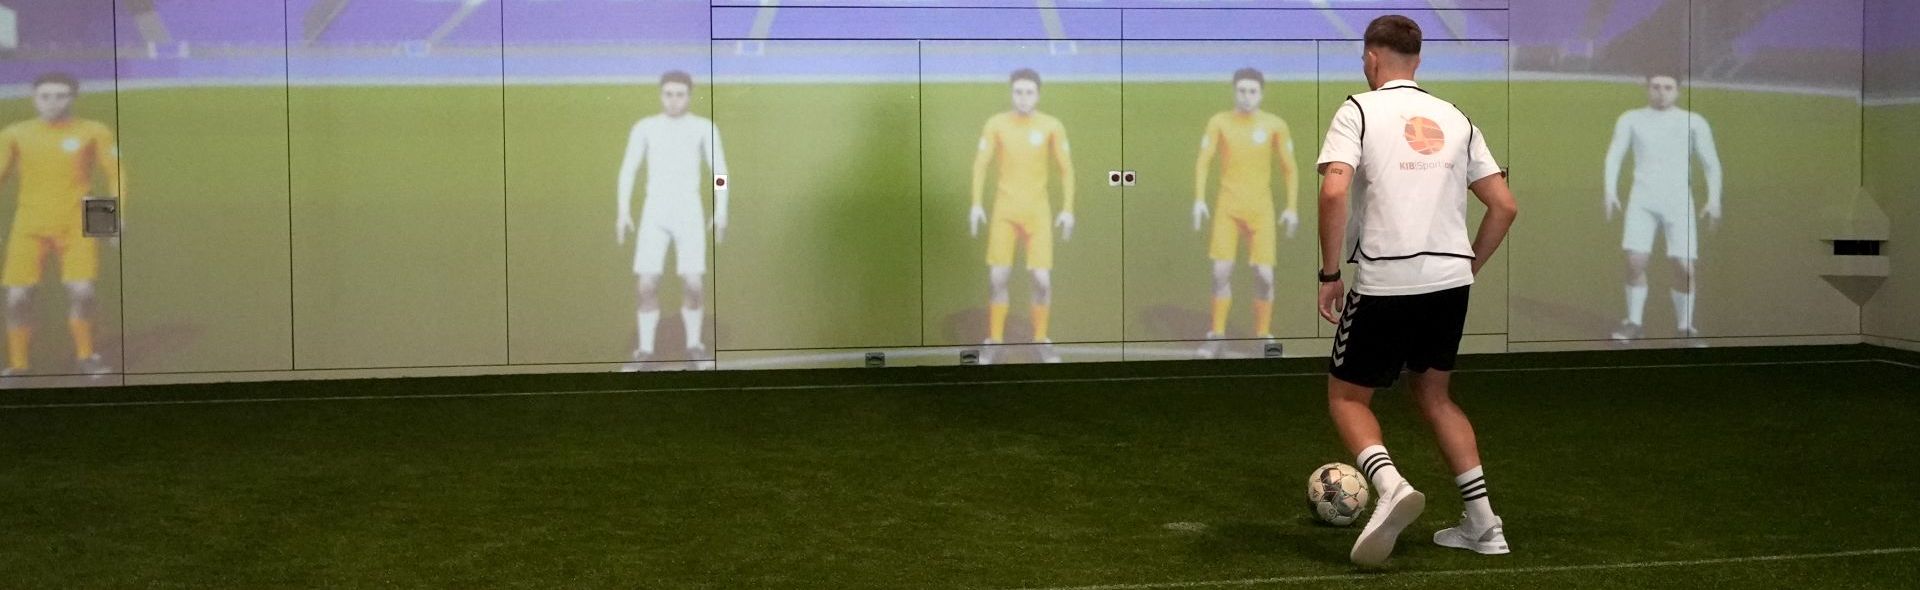 Ein junger Mann steht mit Ball vor einer Wand, an der per Projektion digitale Mit- und Gegenspieler dargestellt werden.